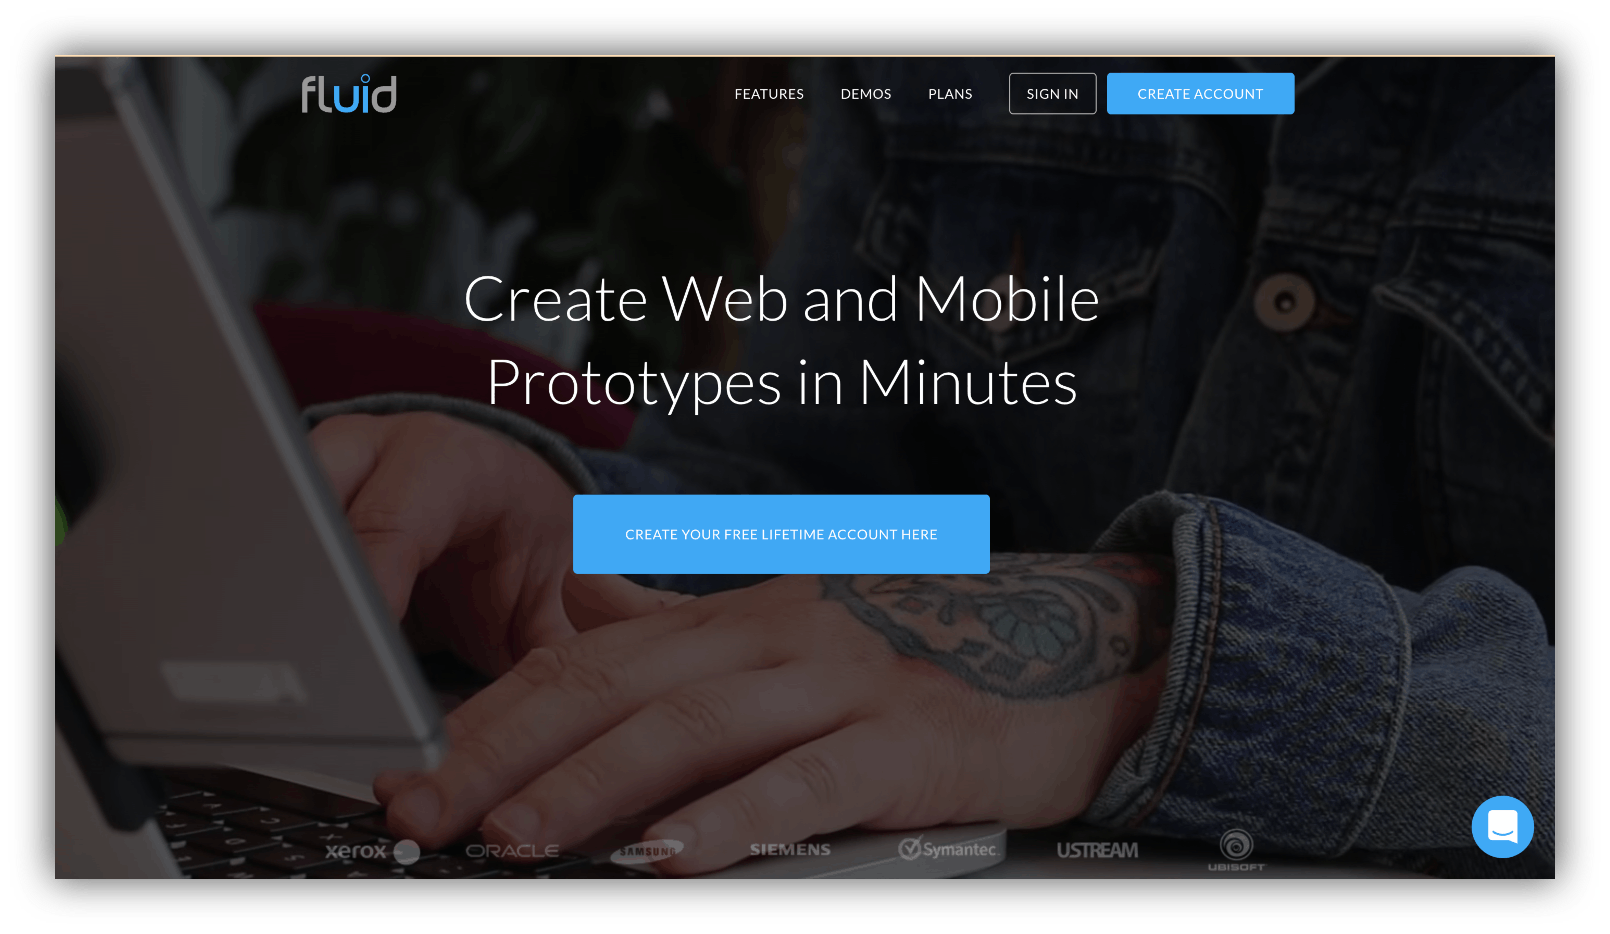 fluidui home page